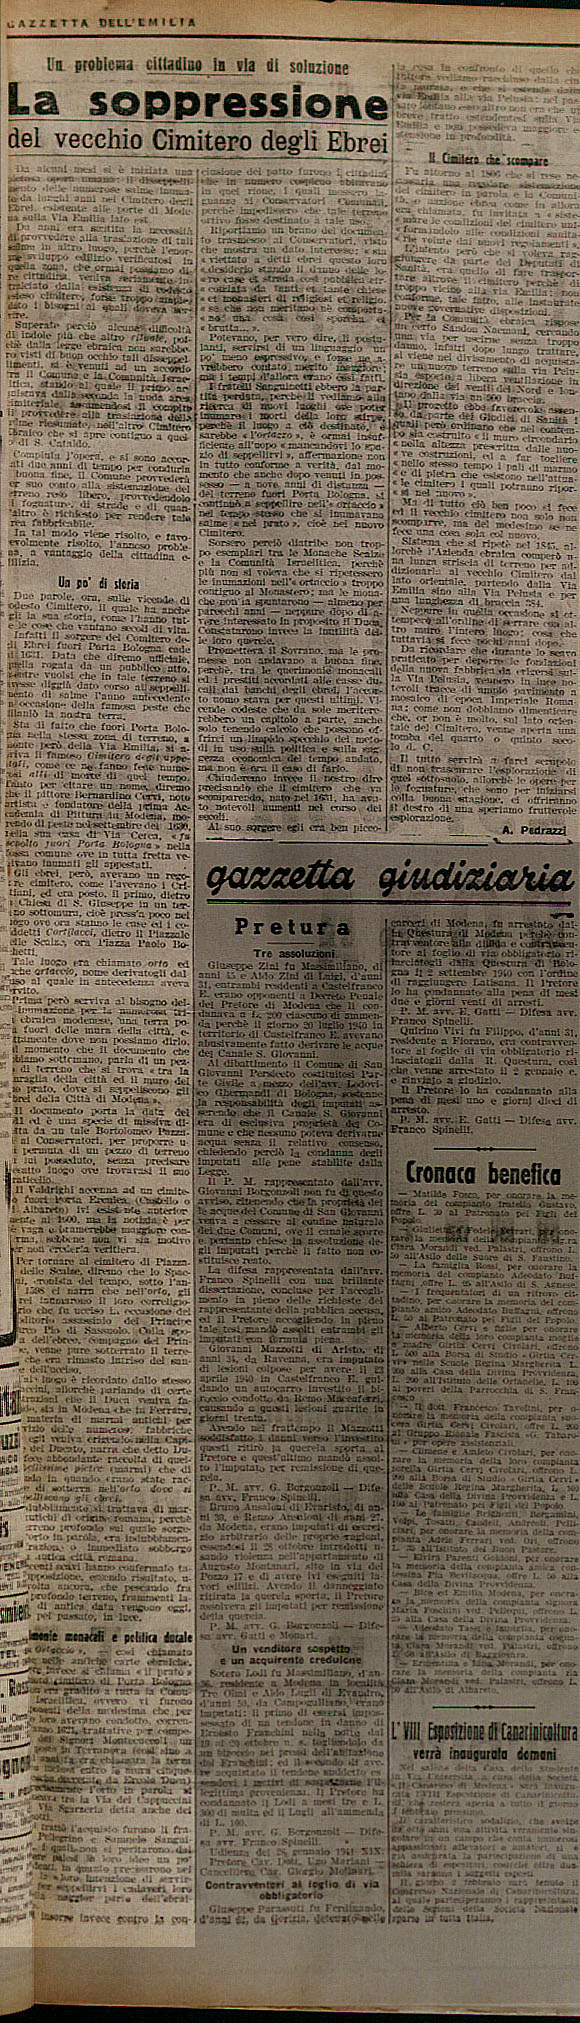 "Gazzetta dell'Emilia", 30/1/1940 